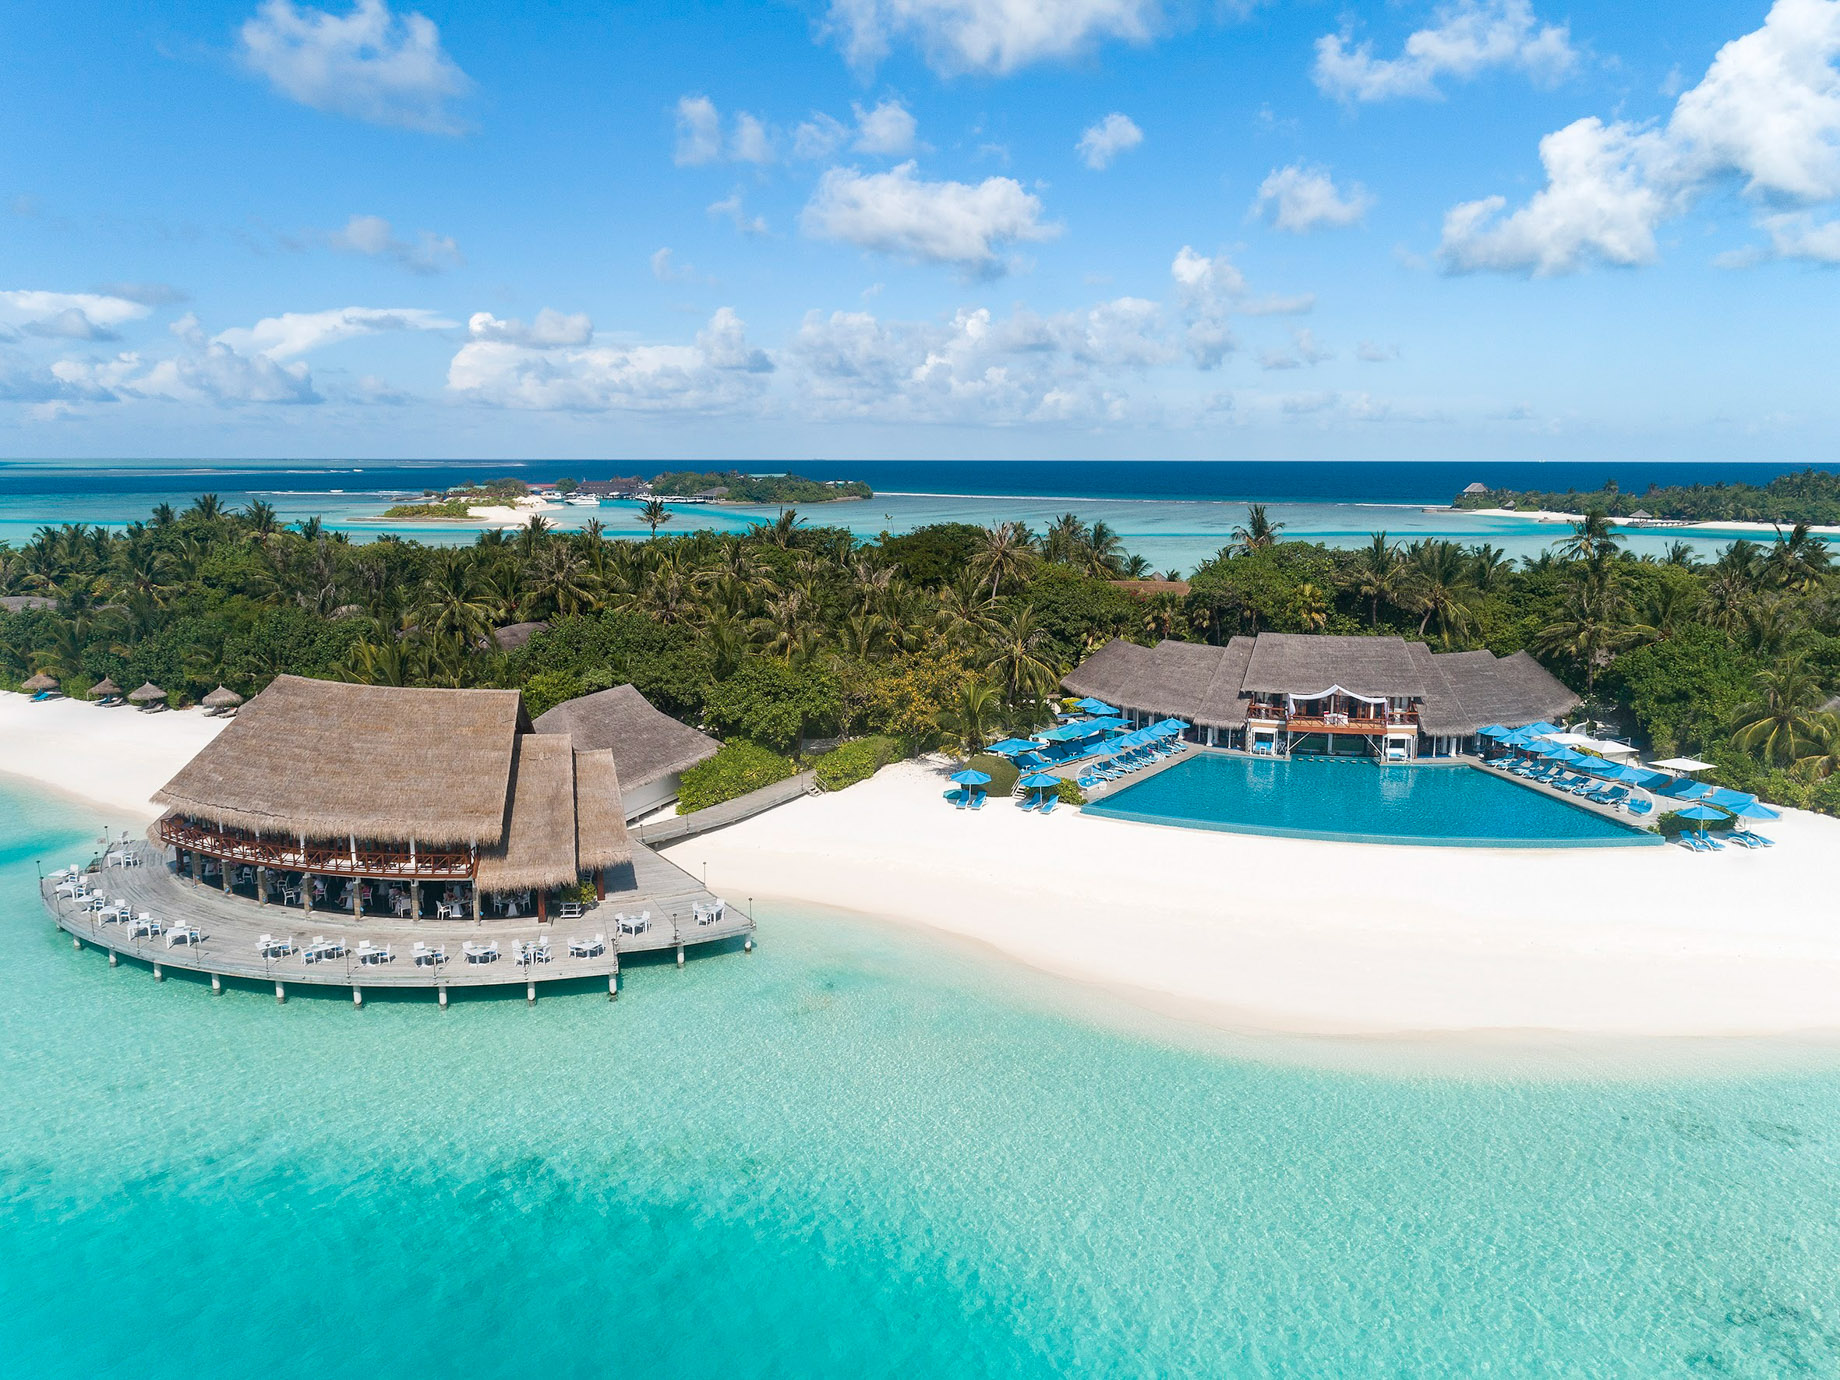 Anantara Thigu Maldives Resort – South Male Atoll, Maldives – Pool Aerial View